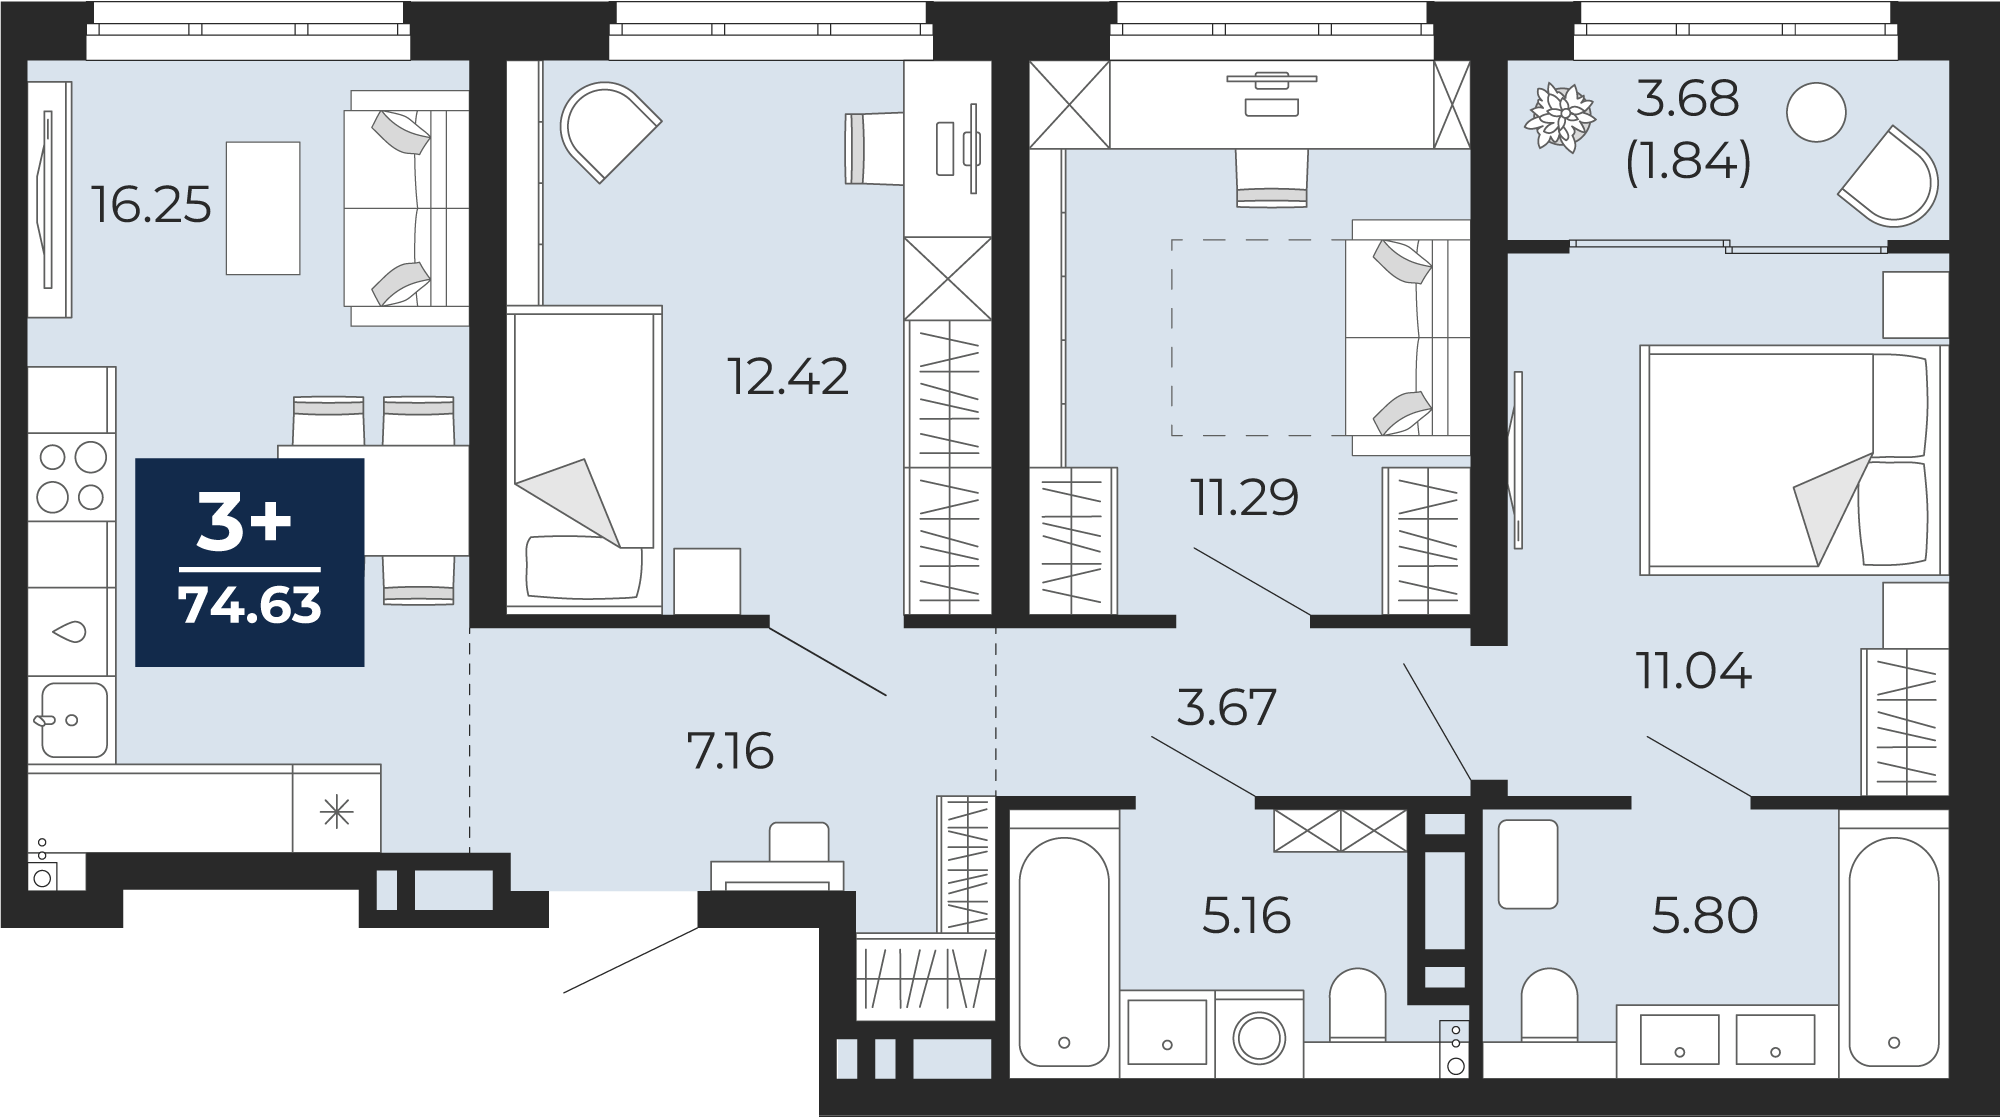 Квартира № 238, 3-комнатная, 74.63 кв. м, 6 этаж